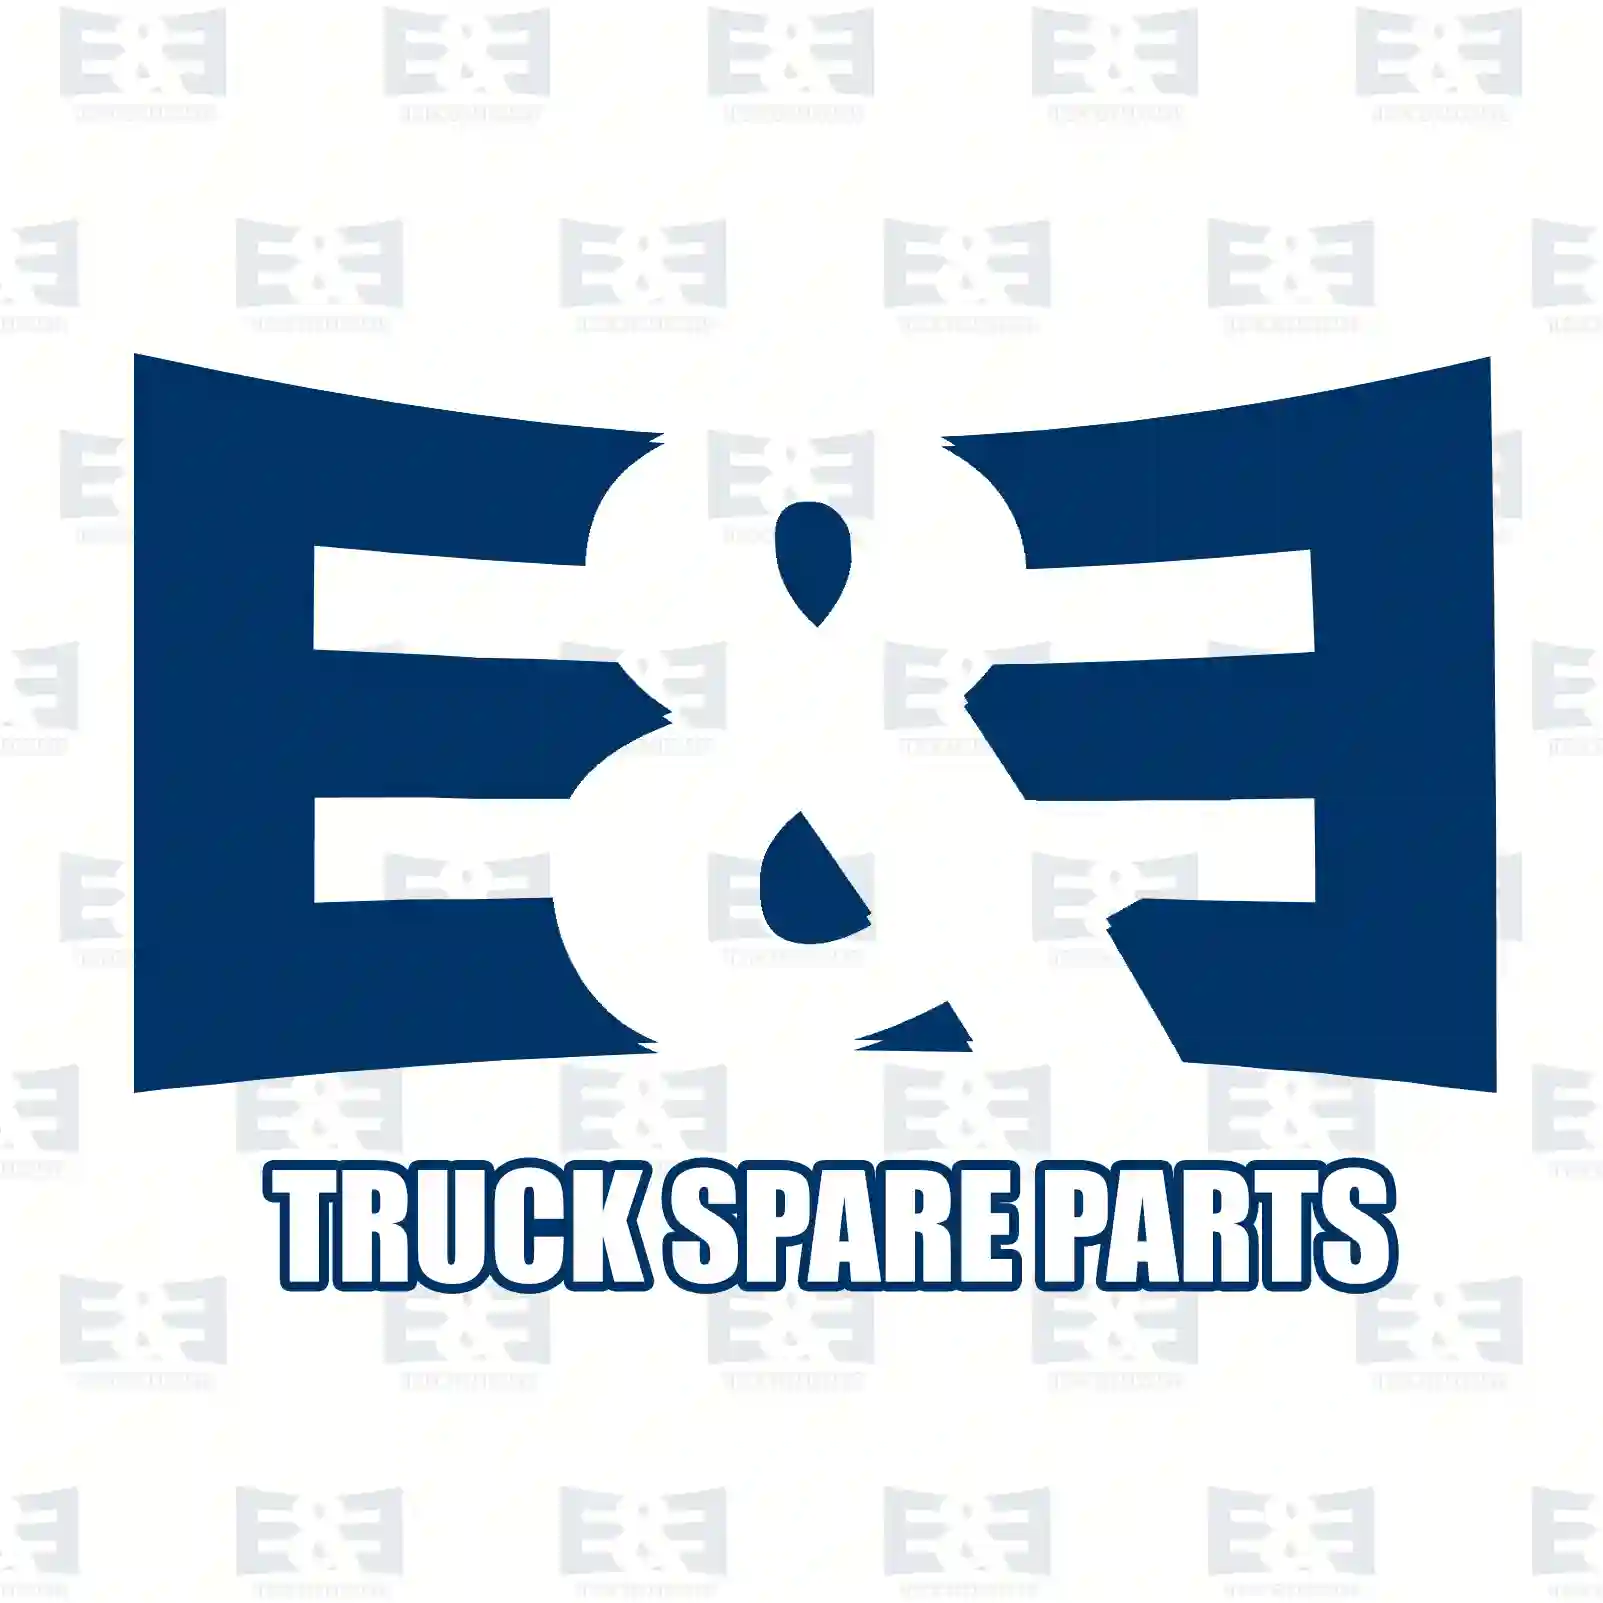 Camshaft, 2E2209558, 0801T5, 9624835280, 9624835288, 0801T5 ||  2E2209558 E&E Truck Spare Parts | Truck Spare Parts, Auotomotive Spare Parts Camshaft, 2E2209558, 0801T5, 9624835280, 9624835288, 0801T5 ||  2E2209558 E&E Truck Spare Parts | Truck Spare Parts, Auotomotive Spare Parts